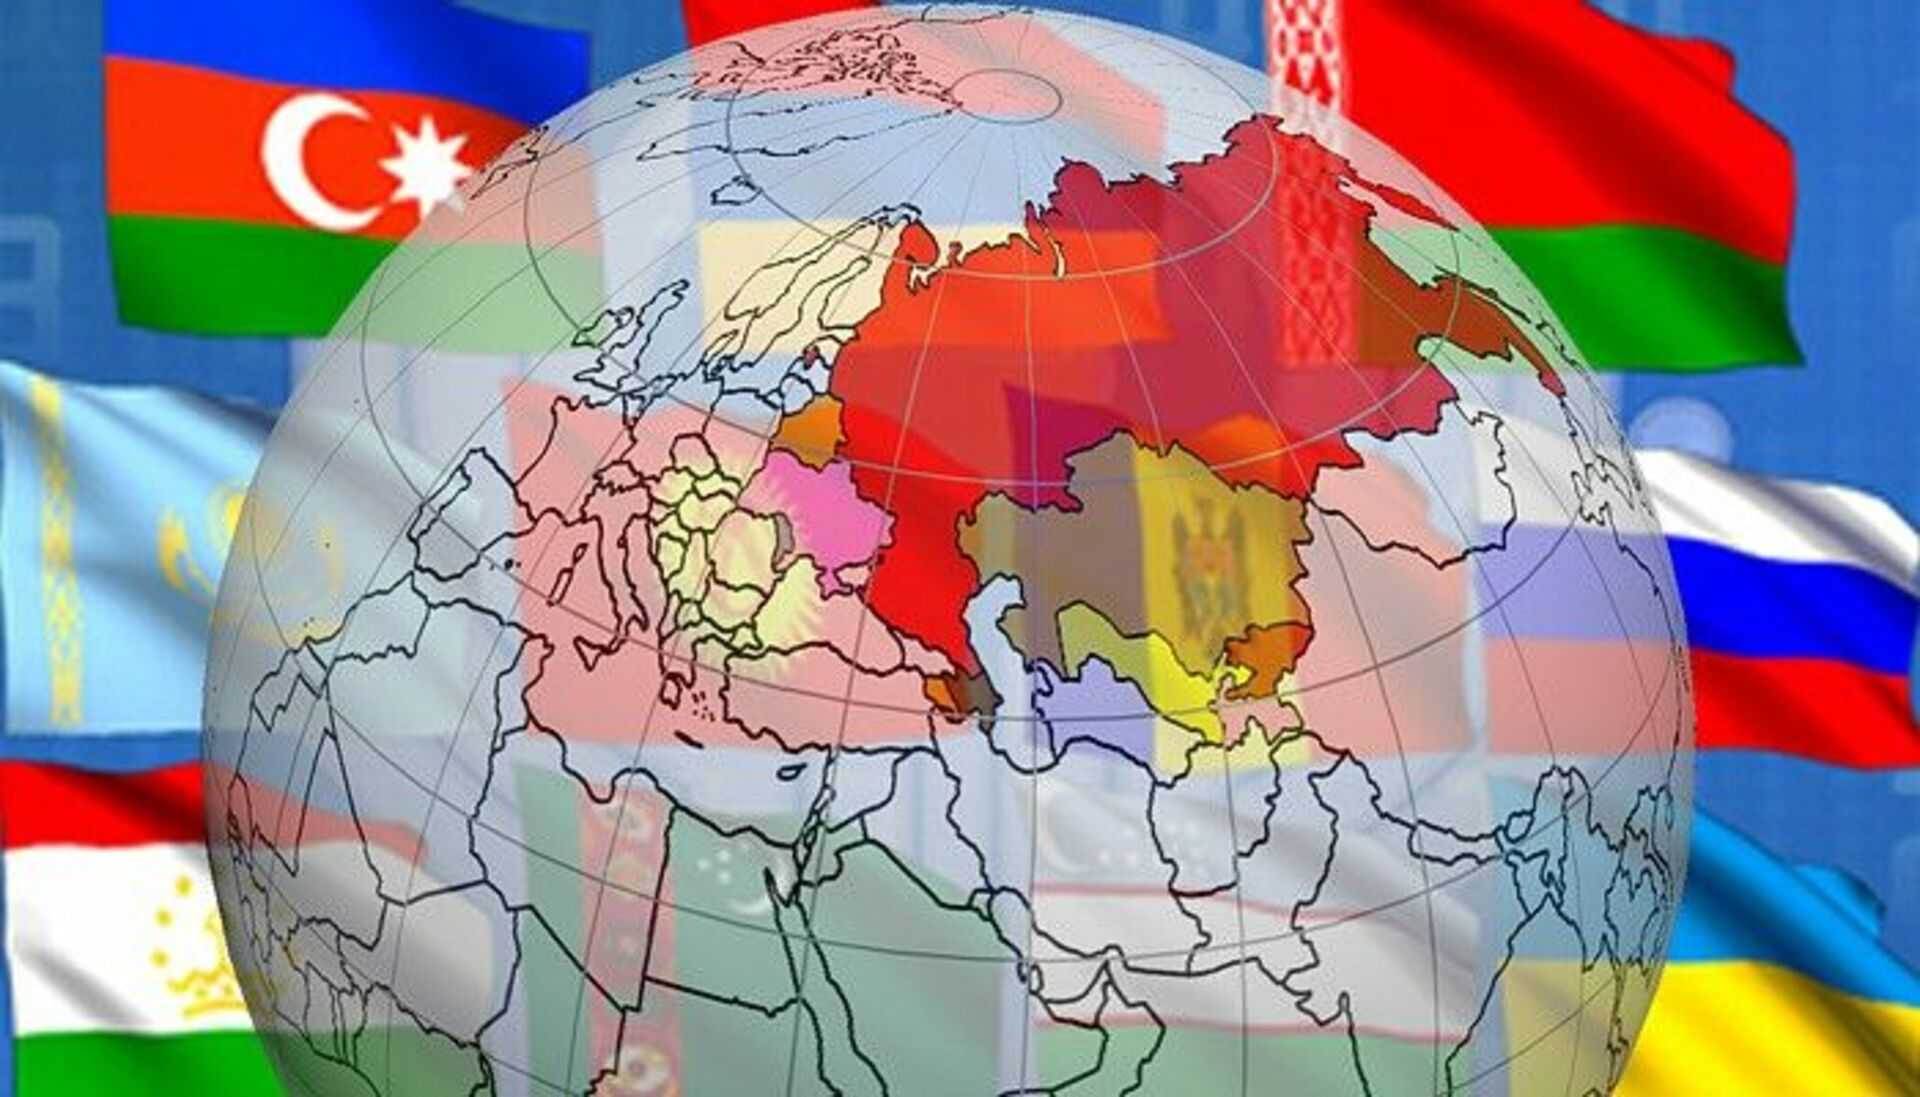 » роль санкт-петербурга в развитии культурных связей россии со странами снг - международные гуманитарные связи